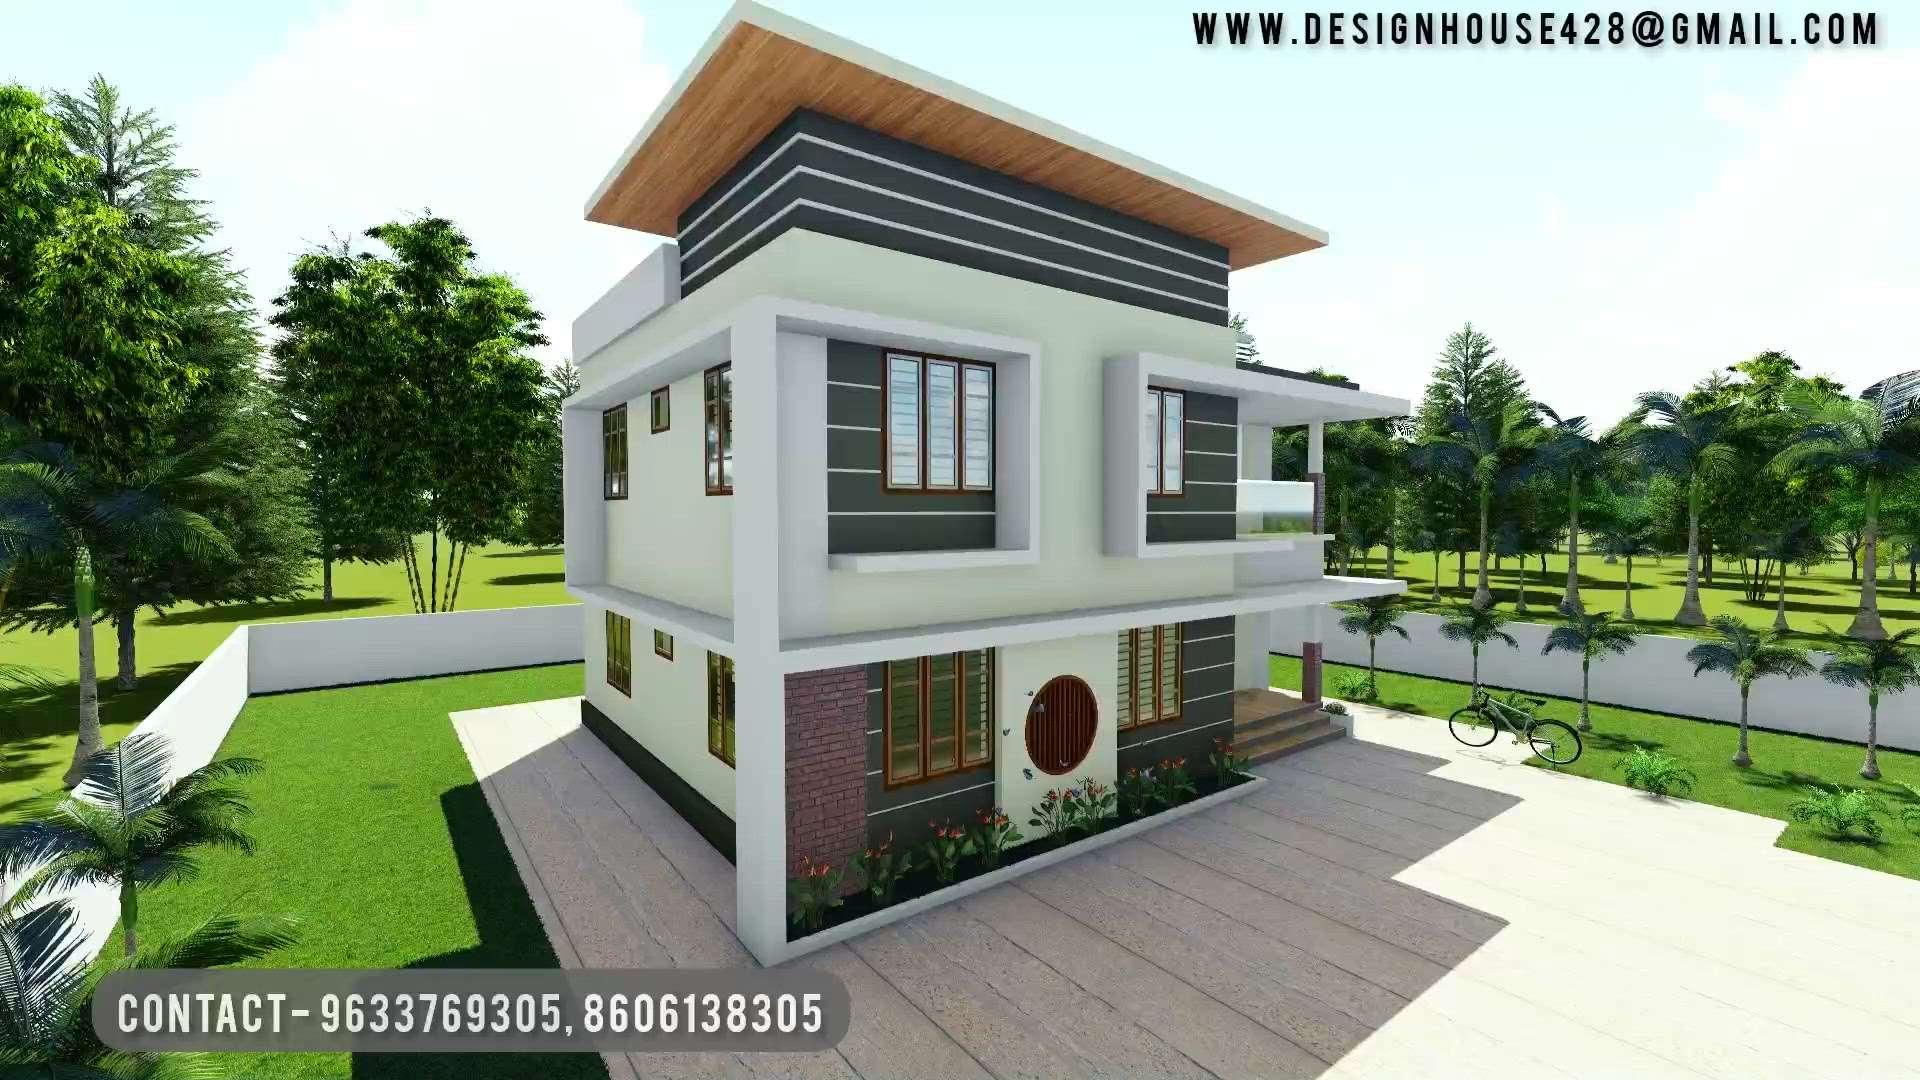 നിങ്ങളുടെ ഇഷ്ട്ടങ്ങൾക്കും ബഡ്‌ജറ്റ്നും അനുസരിച്ച് വീടെന്ന സ്വപ്നം യഥാർഥ്യമാക്കാം

Our Services:-

✅ Architectural Designing
✅ Construction
✅ 3D Design
✅ 3D videos
✅ Estimate 
✅ Interior Designing
✅ Renovation

Get Your free Consultation
📞 9633769305,8606138305

 #HouseDesigns 
 #HomeAutomation 
 #KeralaStyleHouse 
 #Thrissur 
 #LivingroomTexturePainting 
 #Ernakulam 
 #KidsRoom 
 #3d 
 #3Dexterior 
 #3dinteriordesign 
 #ernakulam😍 
 #Kozhikode 
 #Malappuram 
 #Thiruvananthapuram 
 #Alappuzha 
 #Kozhikode 
 #Kannur 
 #azhicode 
 #Contractor 
 #ContemporaryHouse 
 #CivilEngineer 
 #civilconstruction